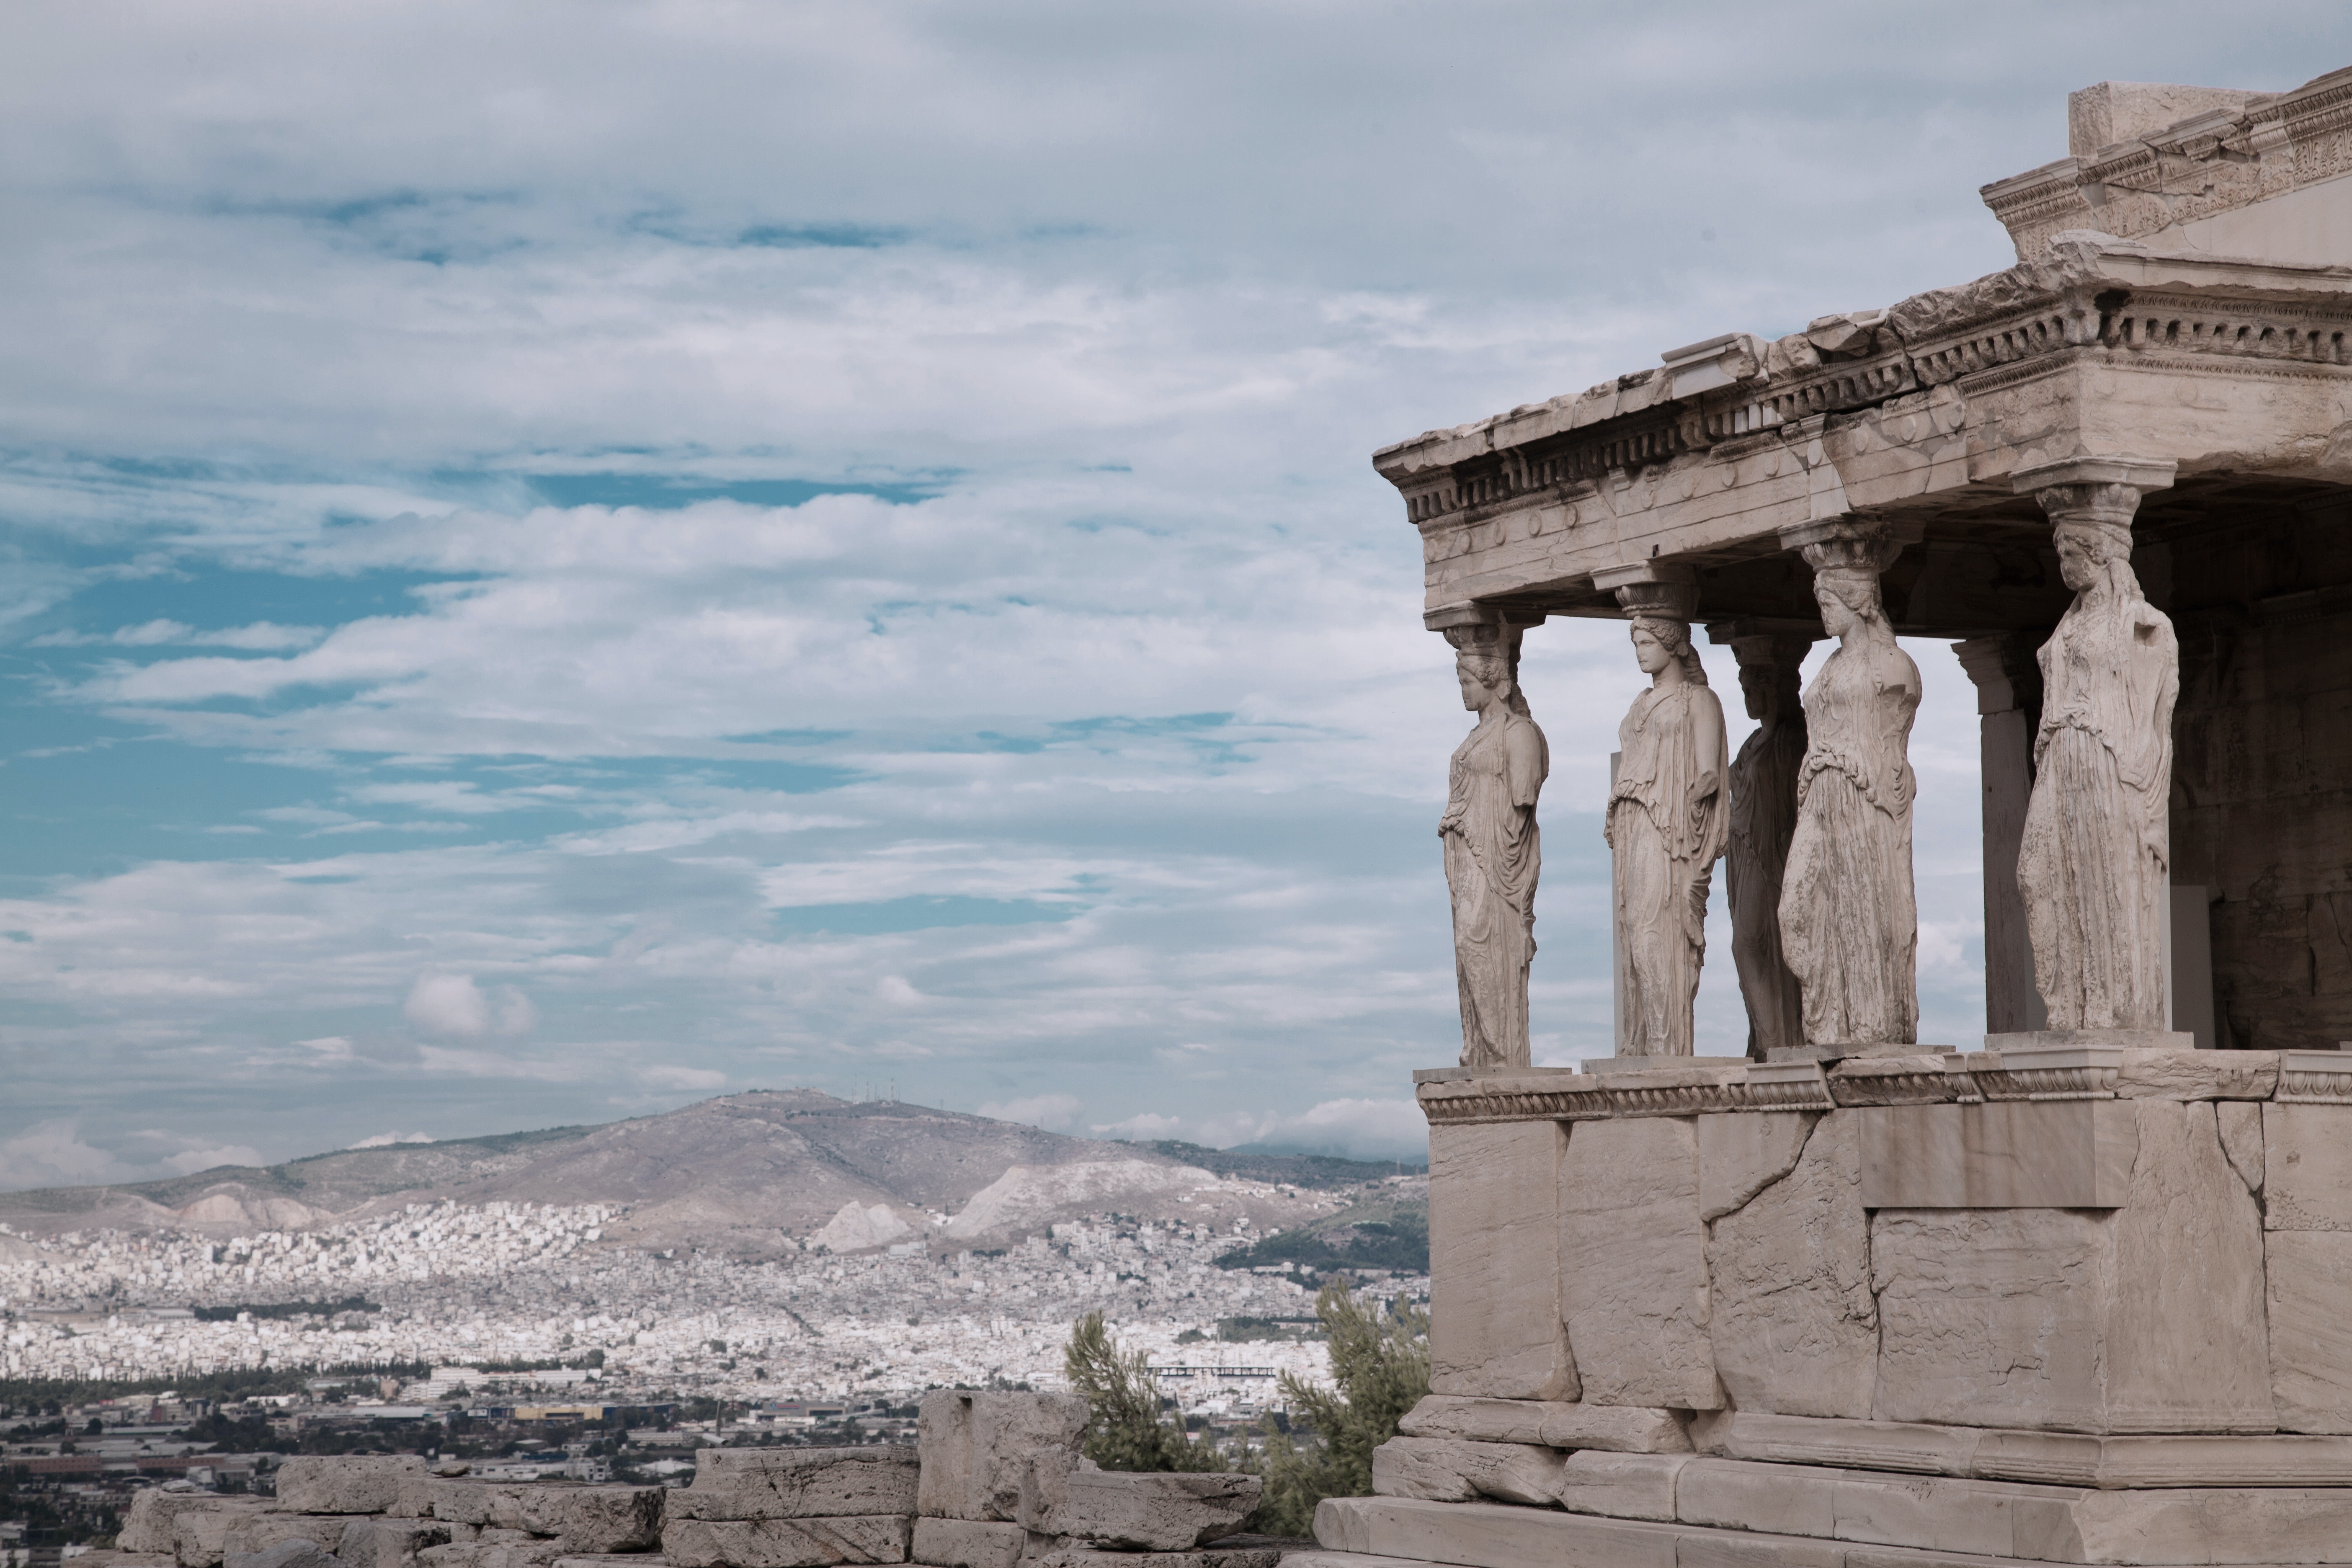 ¿Qué ciudades ver cerca de Atenas?